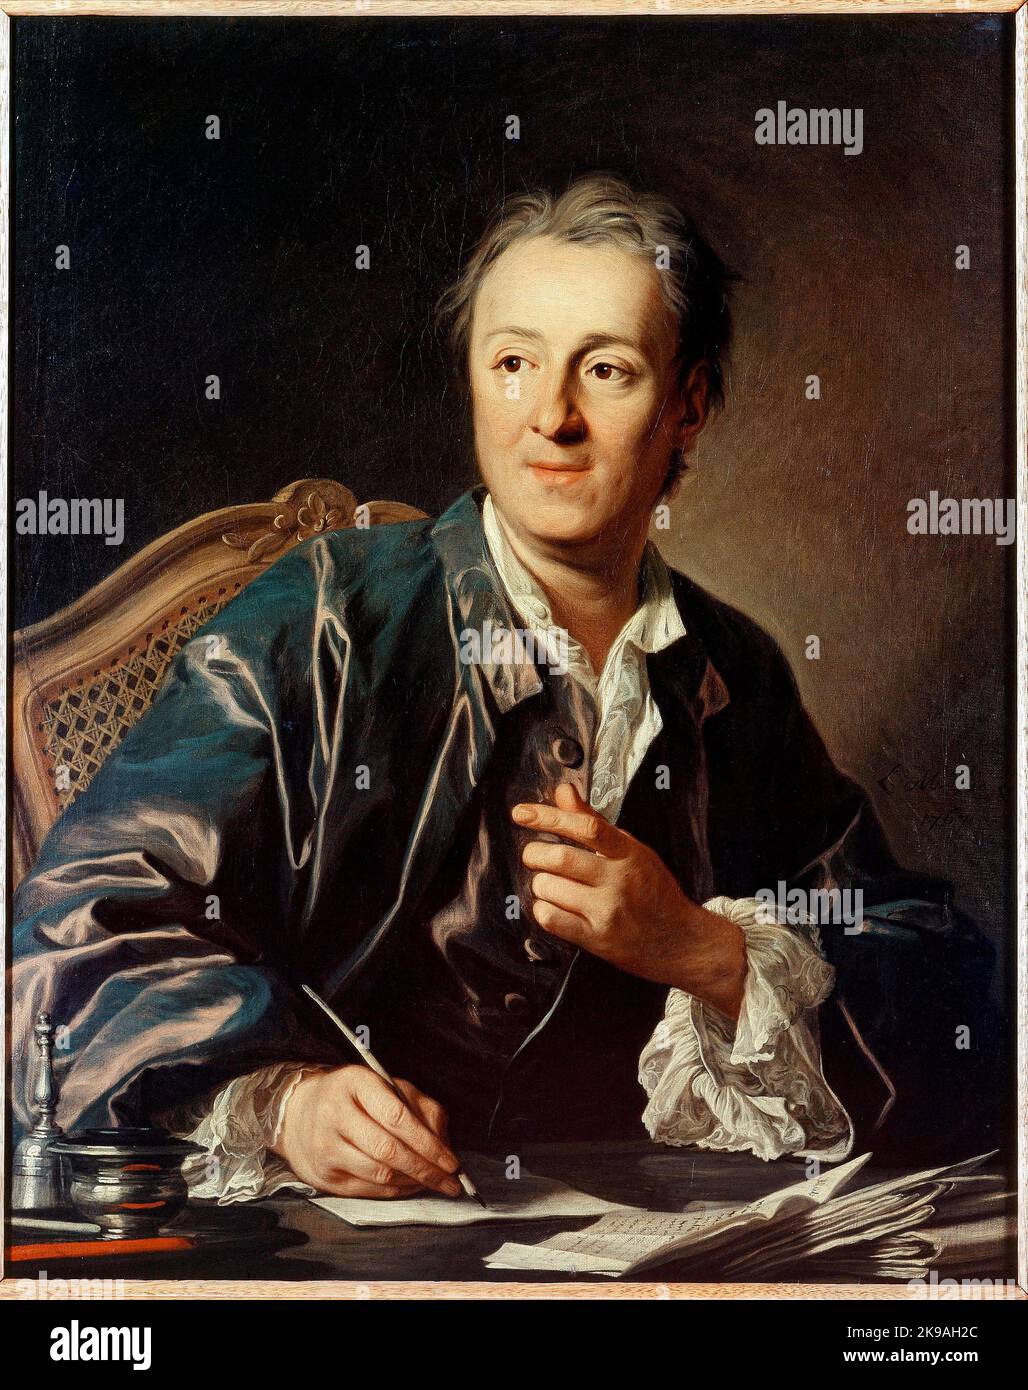 Portrait de Denis Diderot (1713-1784), ecrivain, philosophie, encyclopédique francais, peinture de Louis Michel Van Loo (1707-1771) Huile sur toile, 1767 Dim 0,81 x 0,65 m Musée du Louvre. Paris Banque D'Images